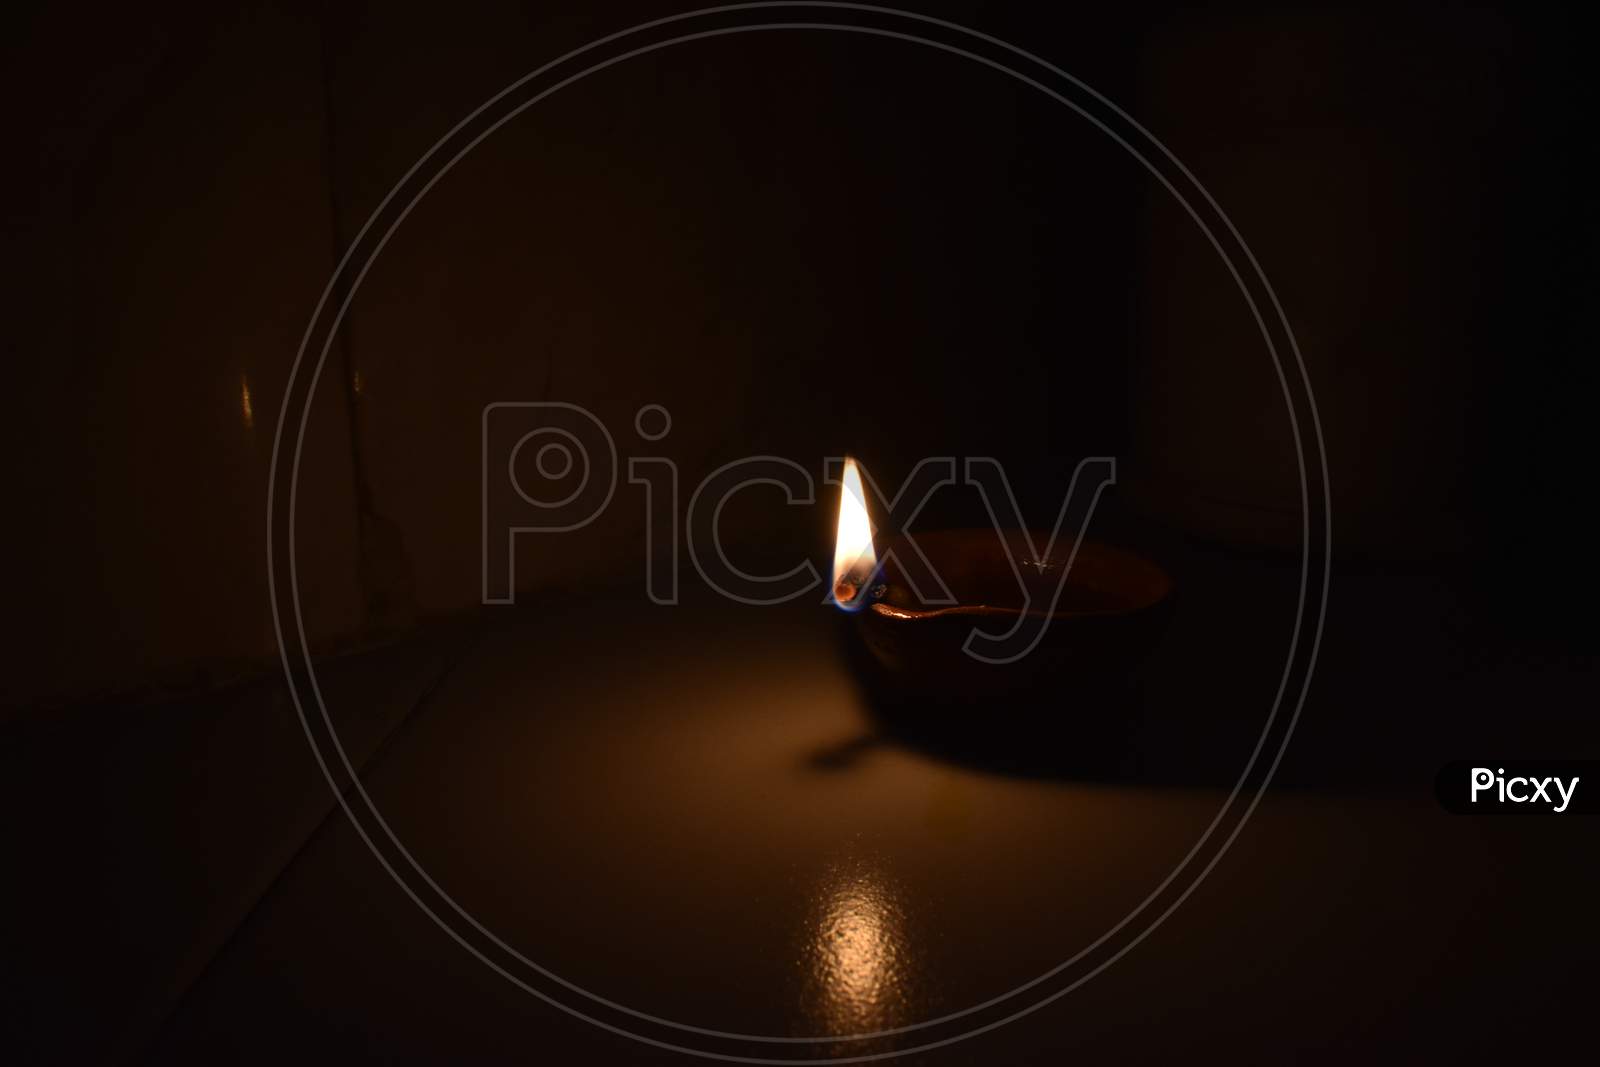 Earthen lamp(diya) burning in dark.